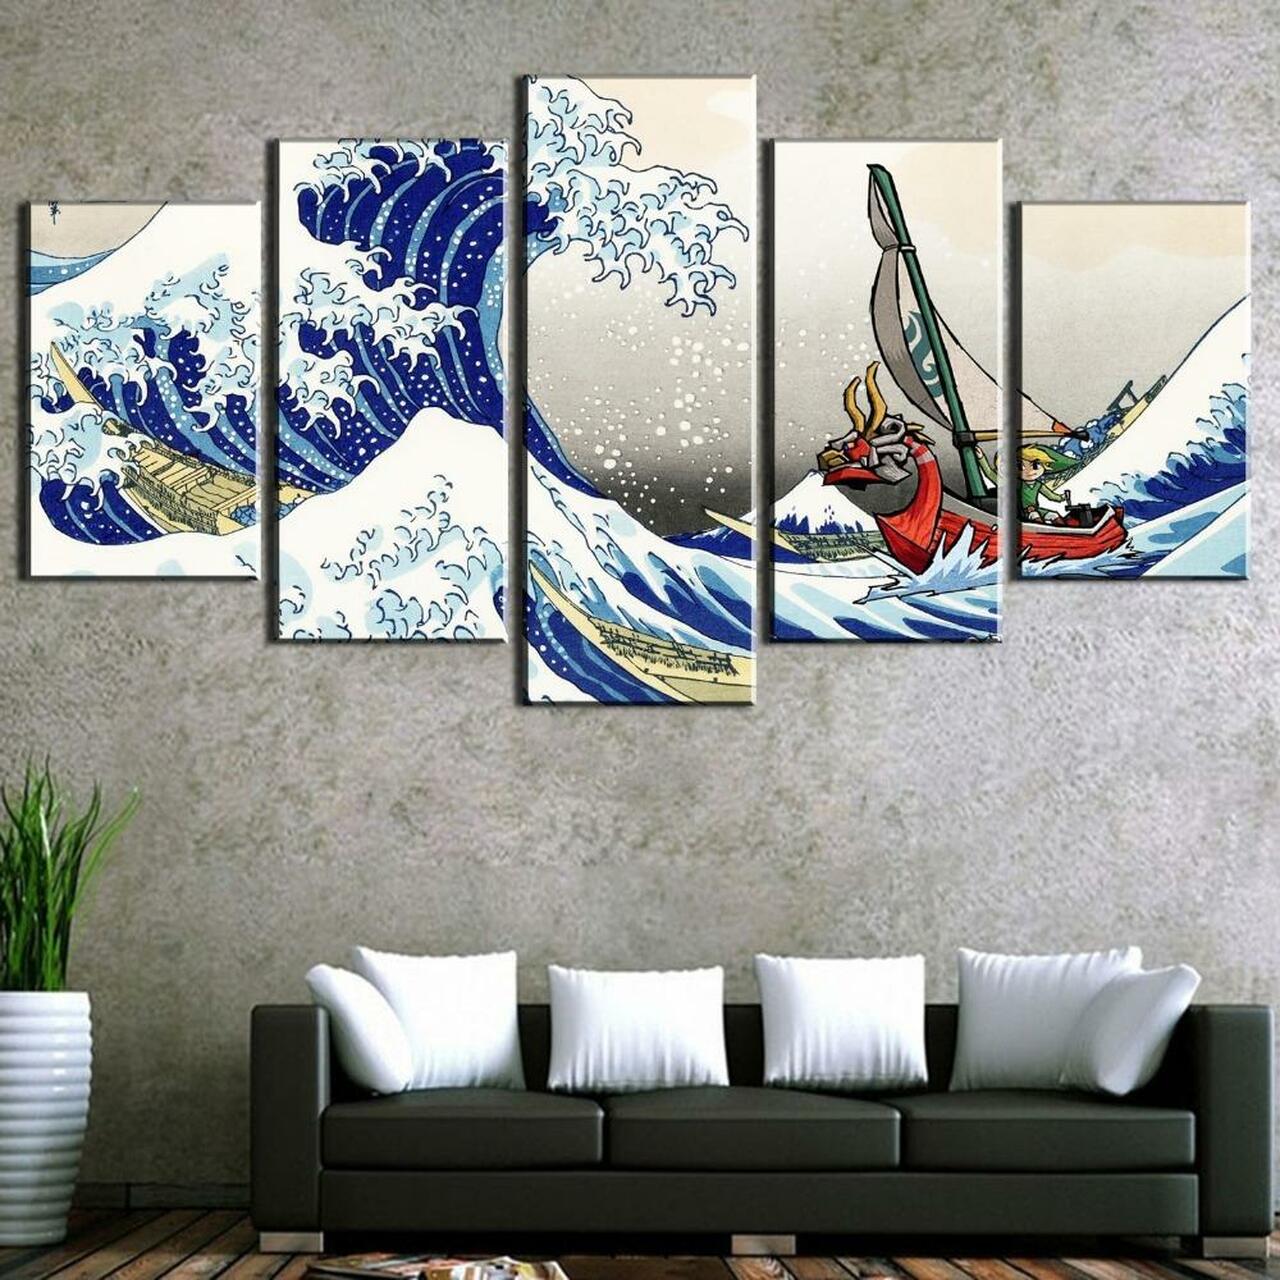 High Waves 5 Piece Canvas Art Wall Decor